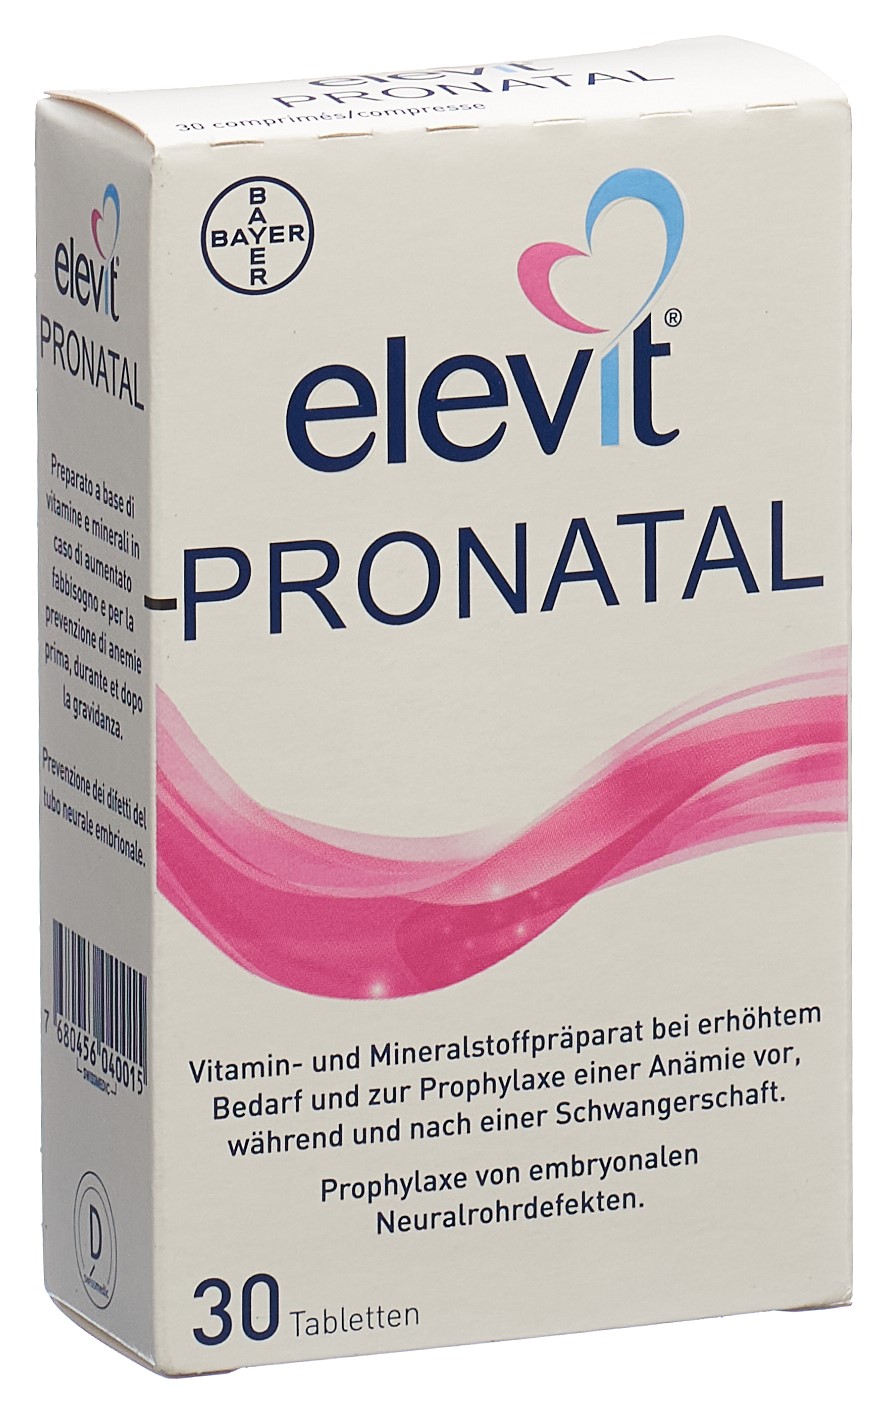 ELEVIT Pronatal Filmtabl (neu) 30 Stk